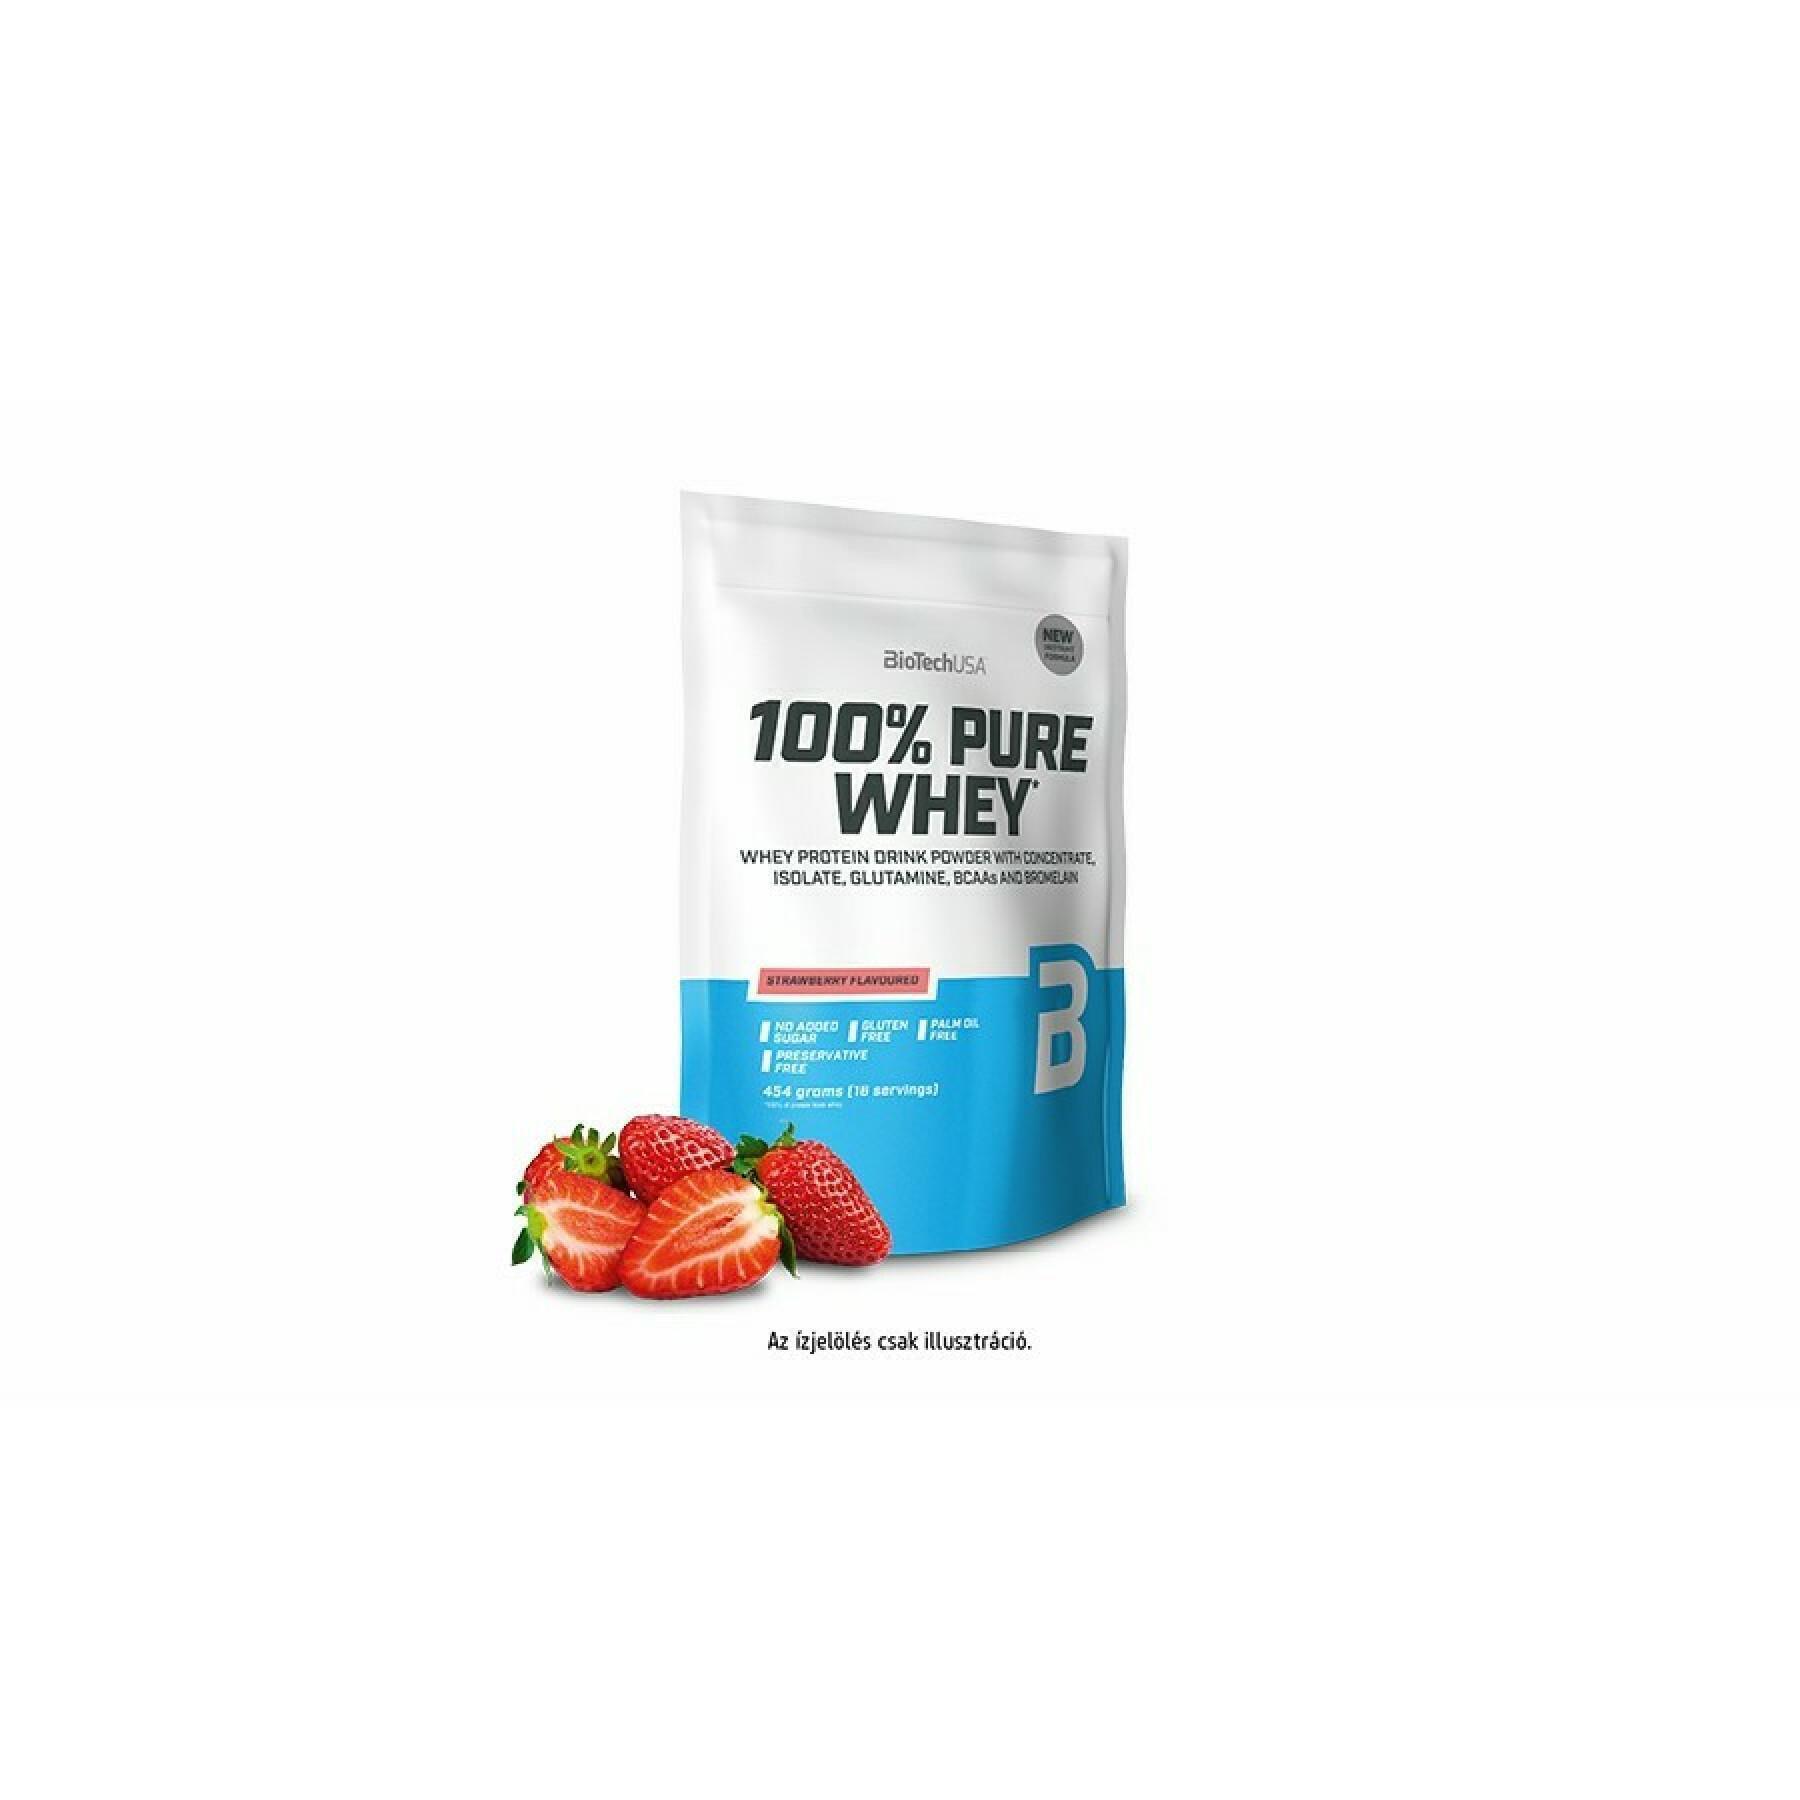 Paquete de 10 bolsas de proteína de suero 100% pura Biotech USA - Fraise - 454g